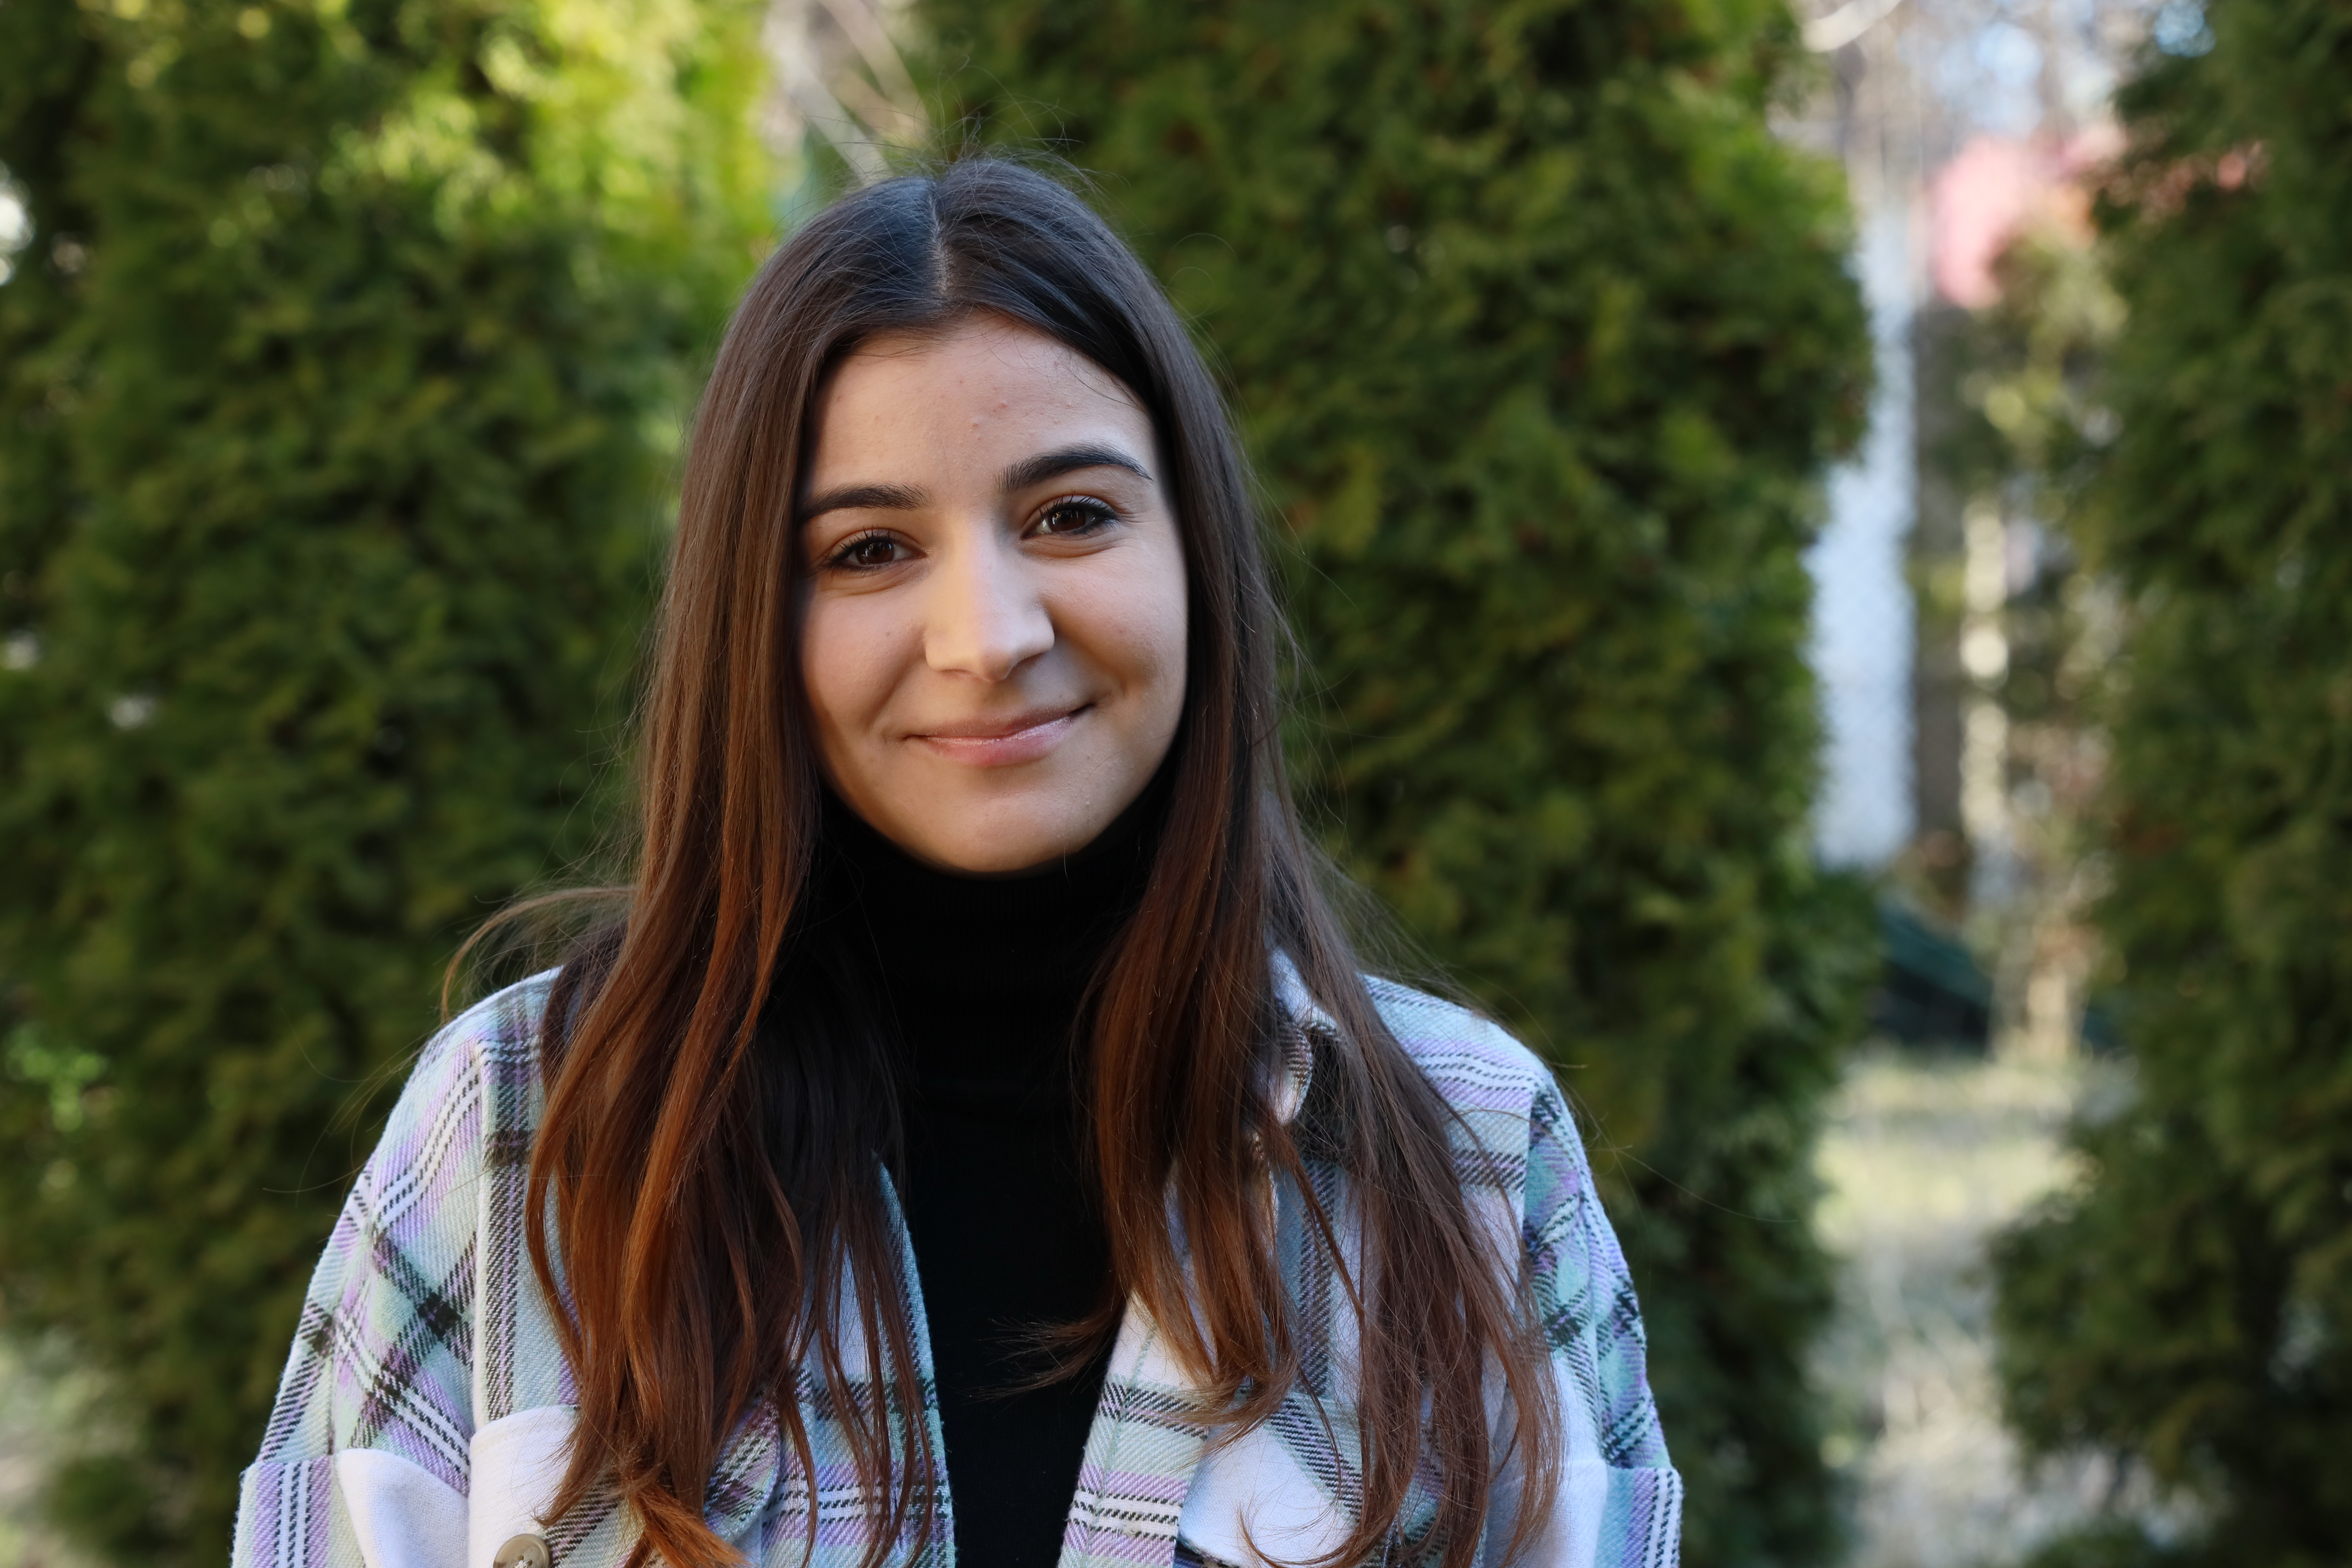 Una joven rumana de 21 años sonriendo y mirando directamente a la cámara en un parque